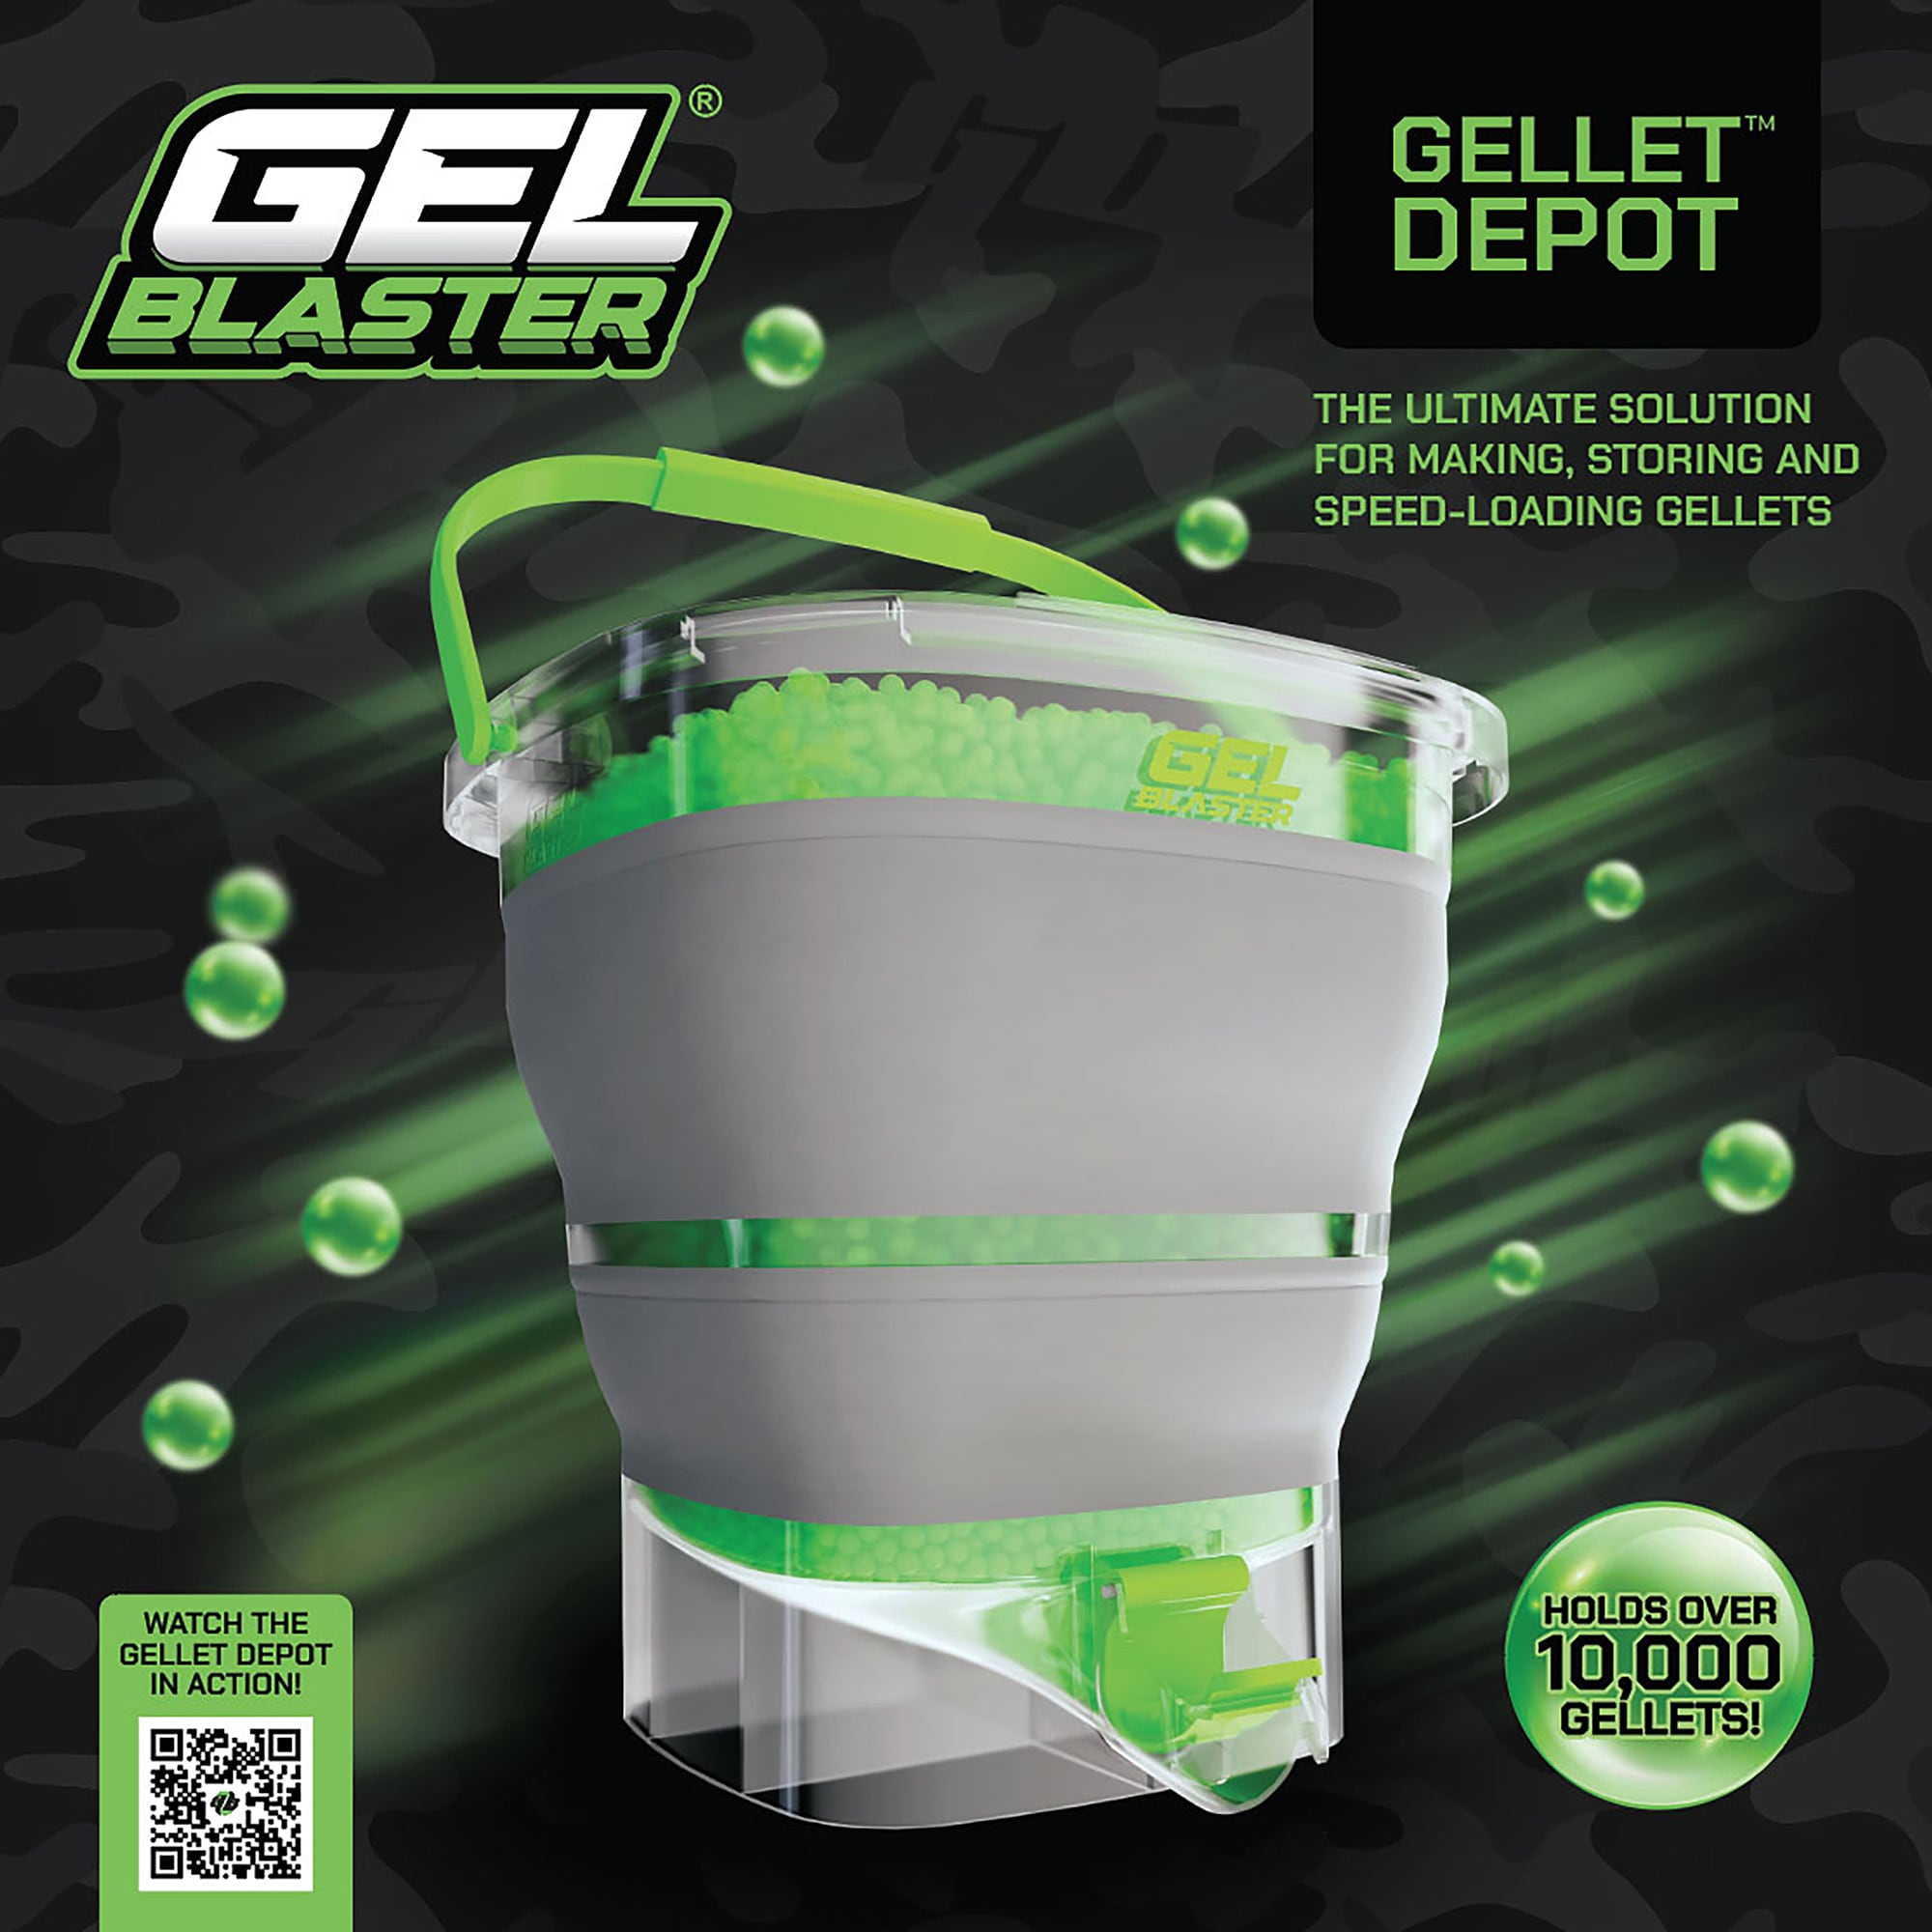 Gel Blaster Gellet Depot Clear-pakken